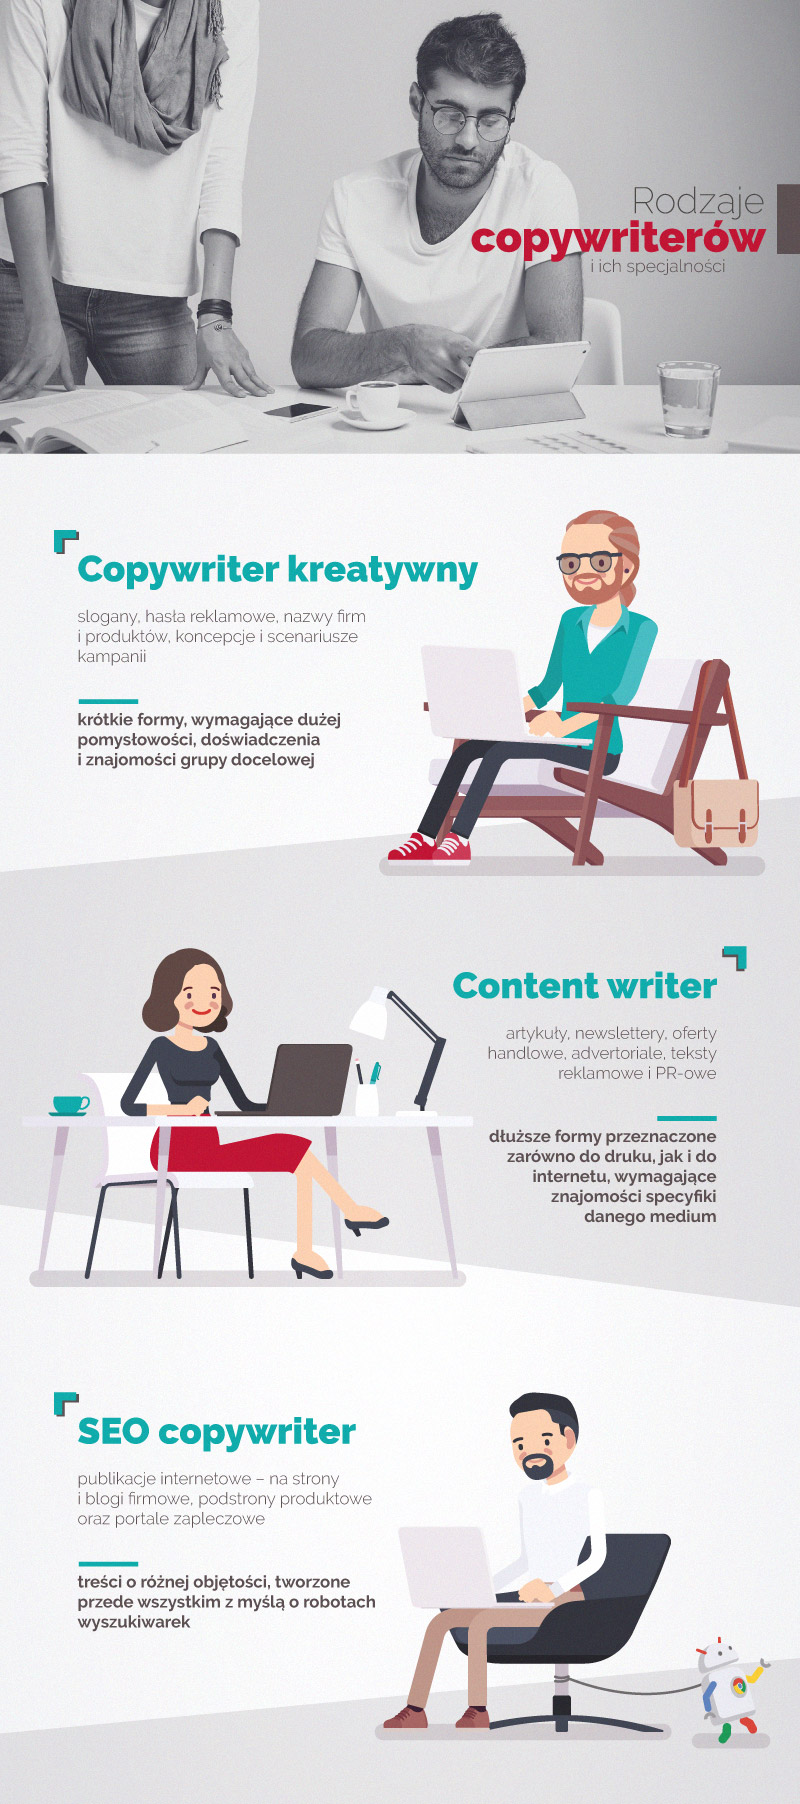 infografika przedstawiająca najczęściej spotykane typy copywriterów